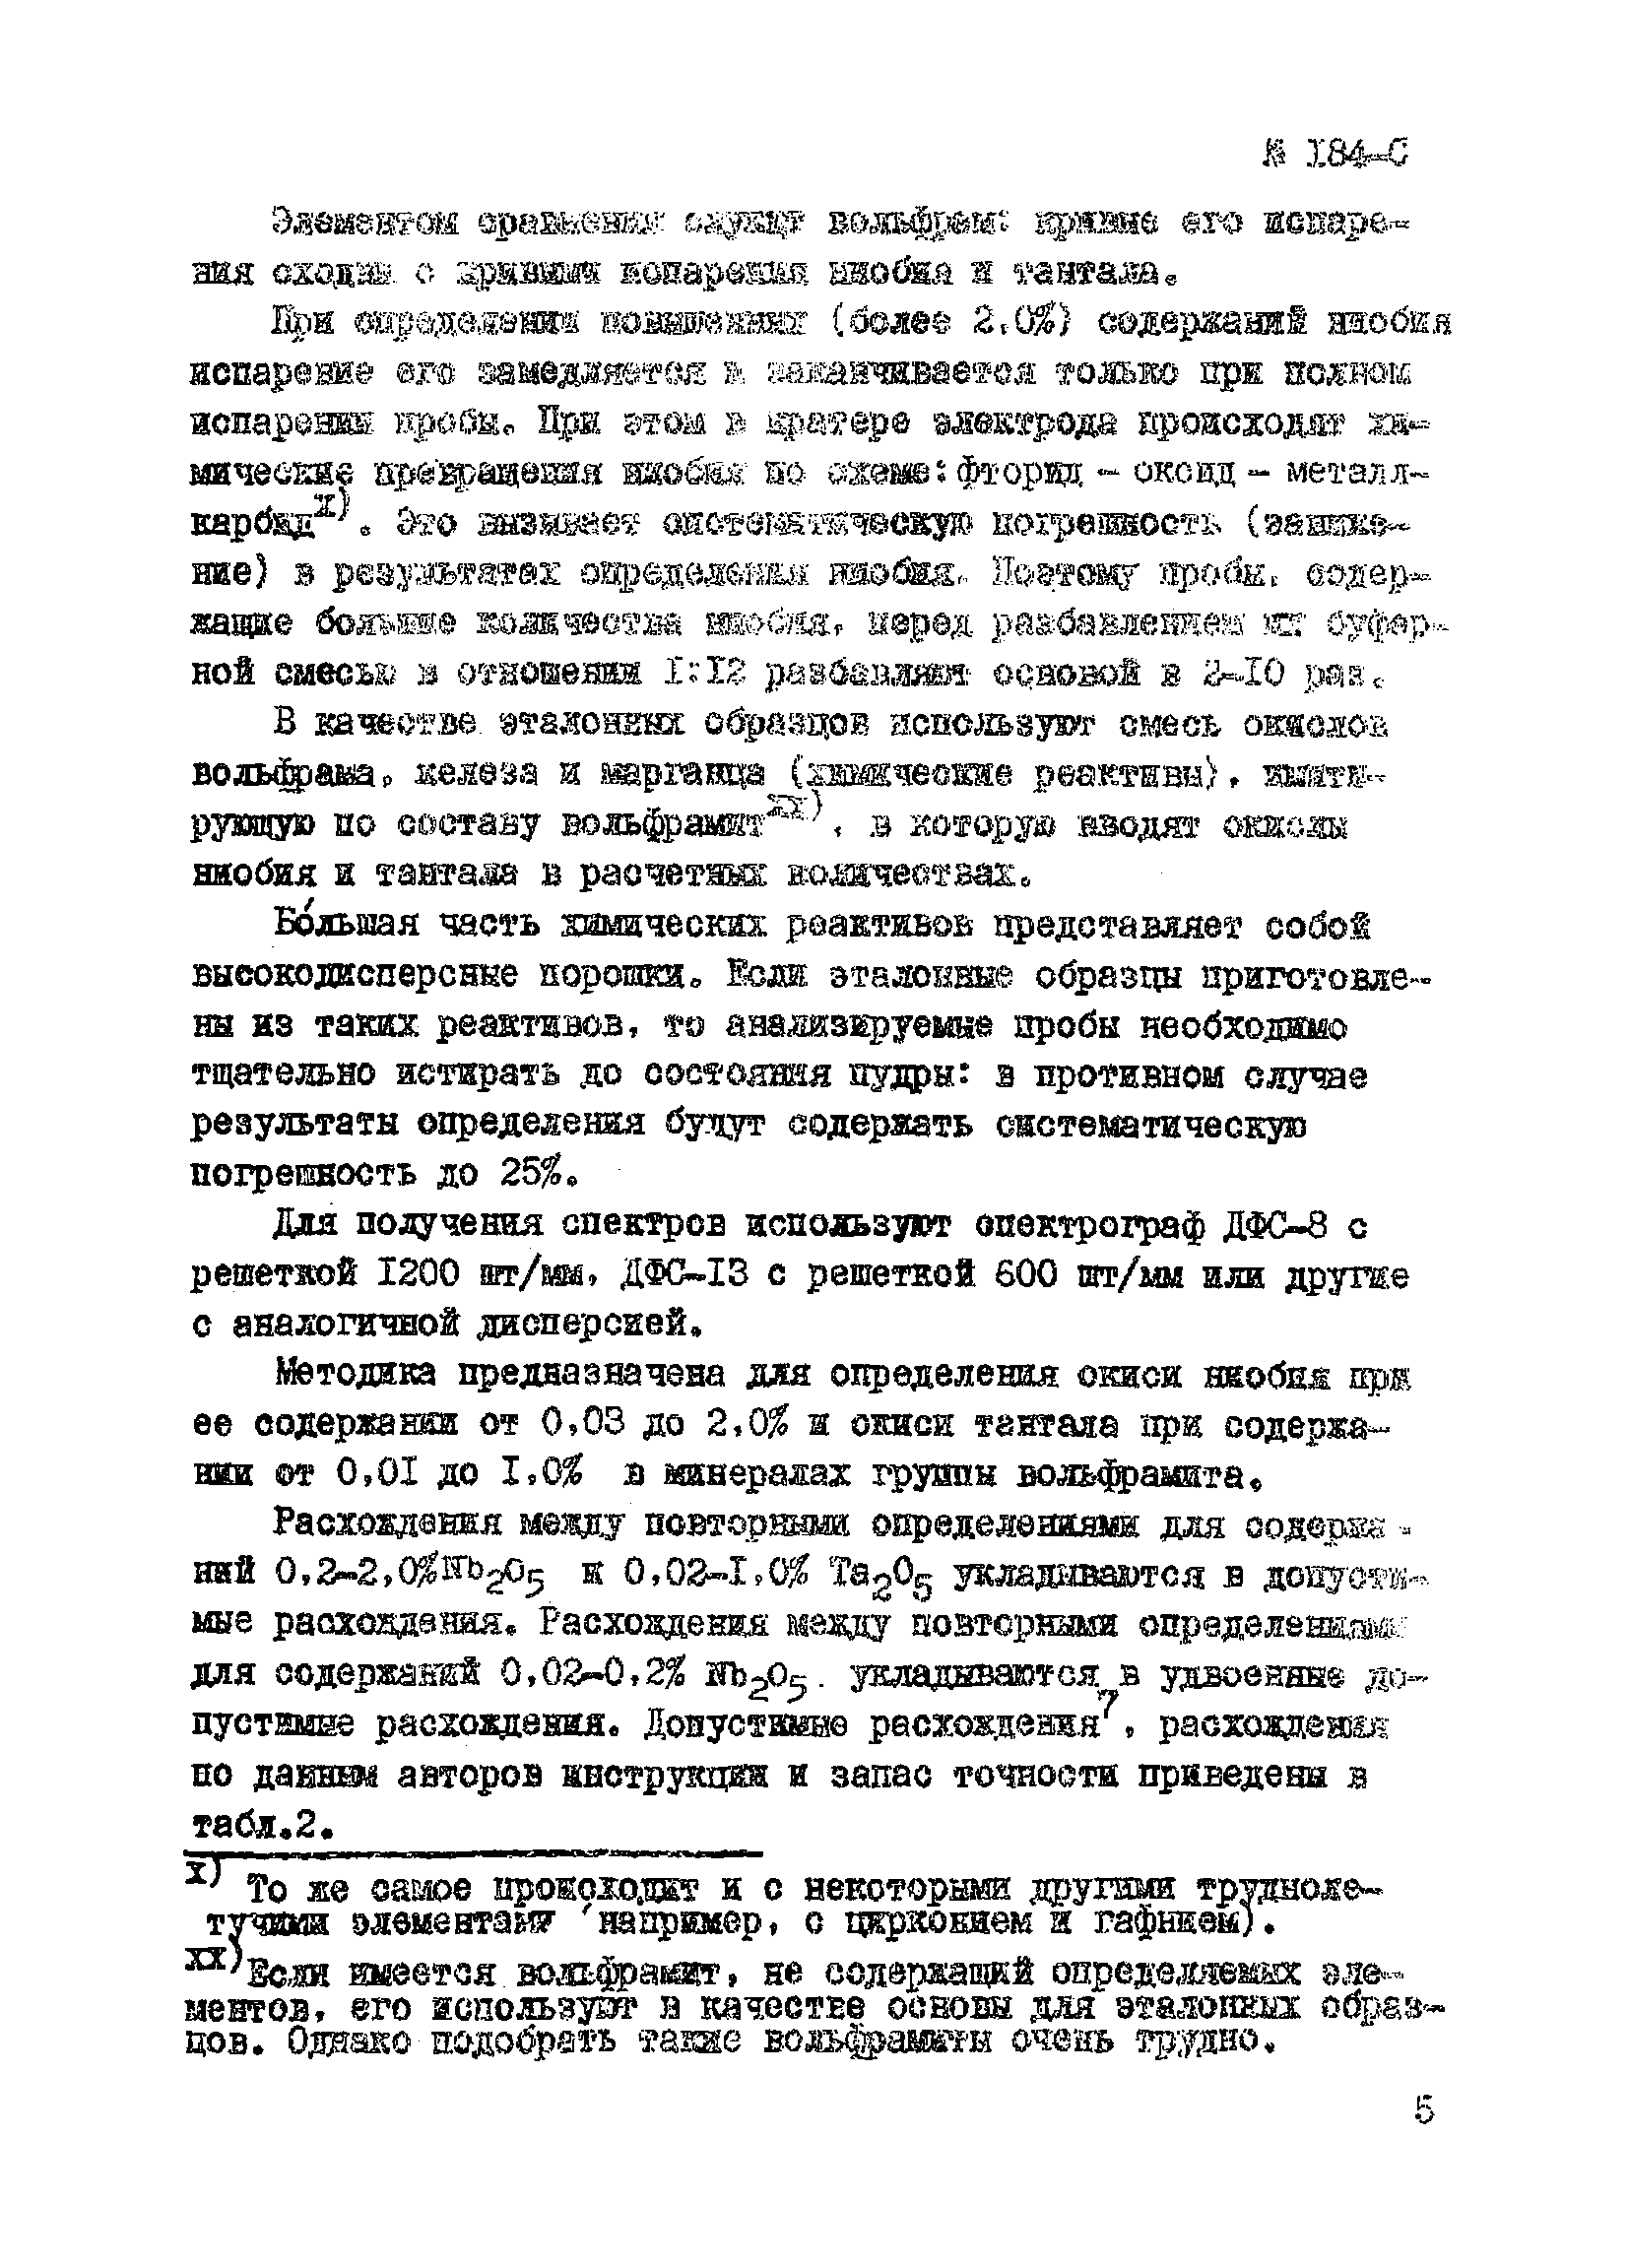 Инструкция НСАМ 184-С